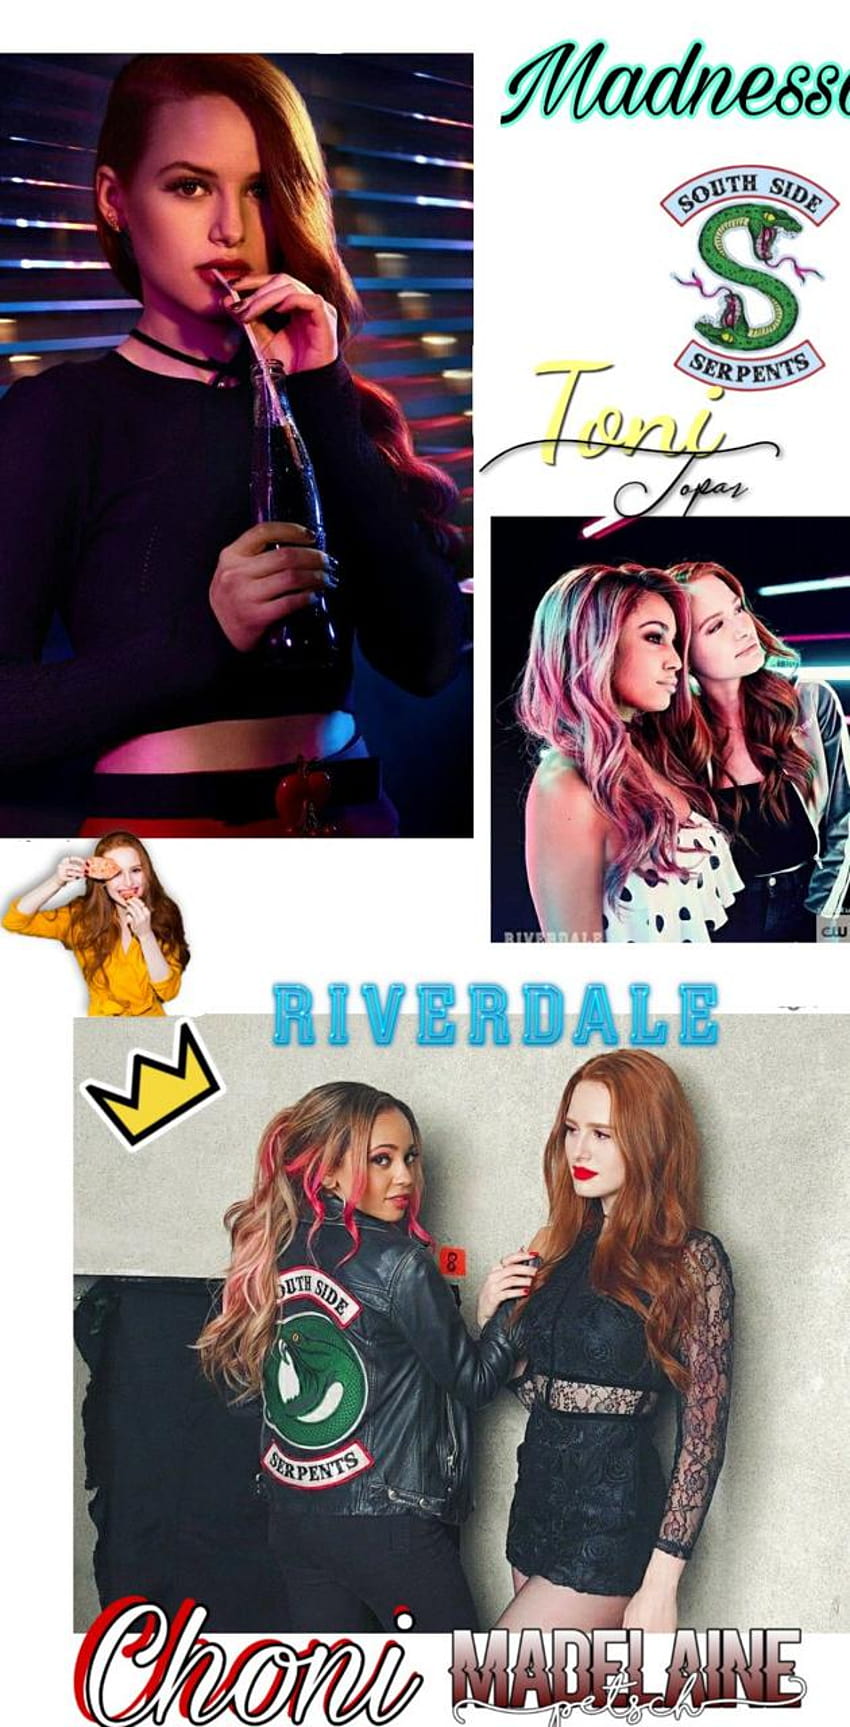 Choni Riverdale oleh paola_Riverdale wallpaper ponsel HD